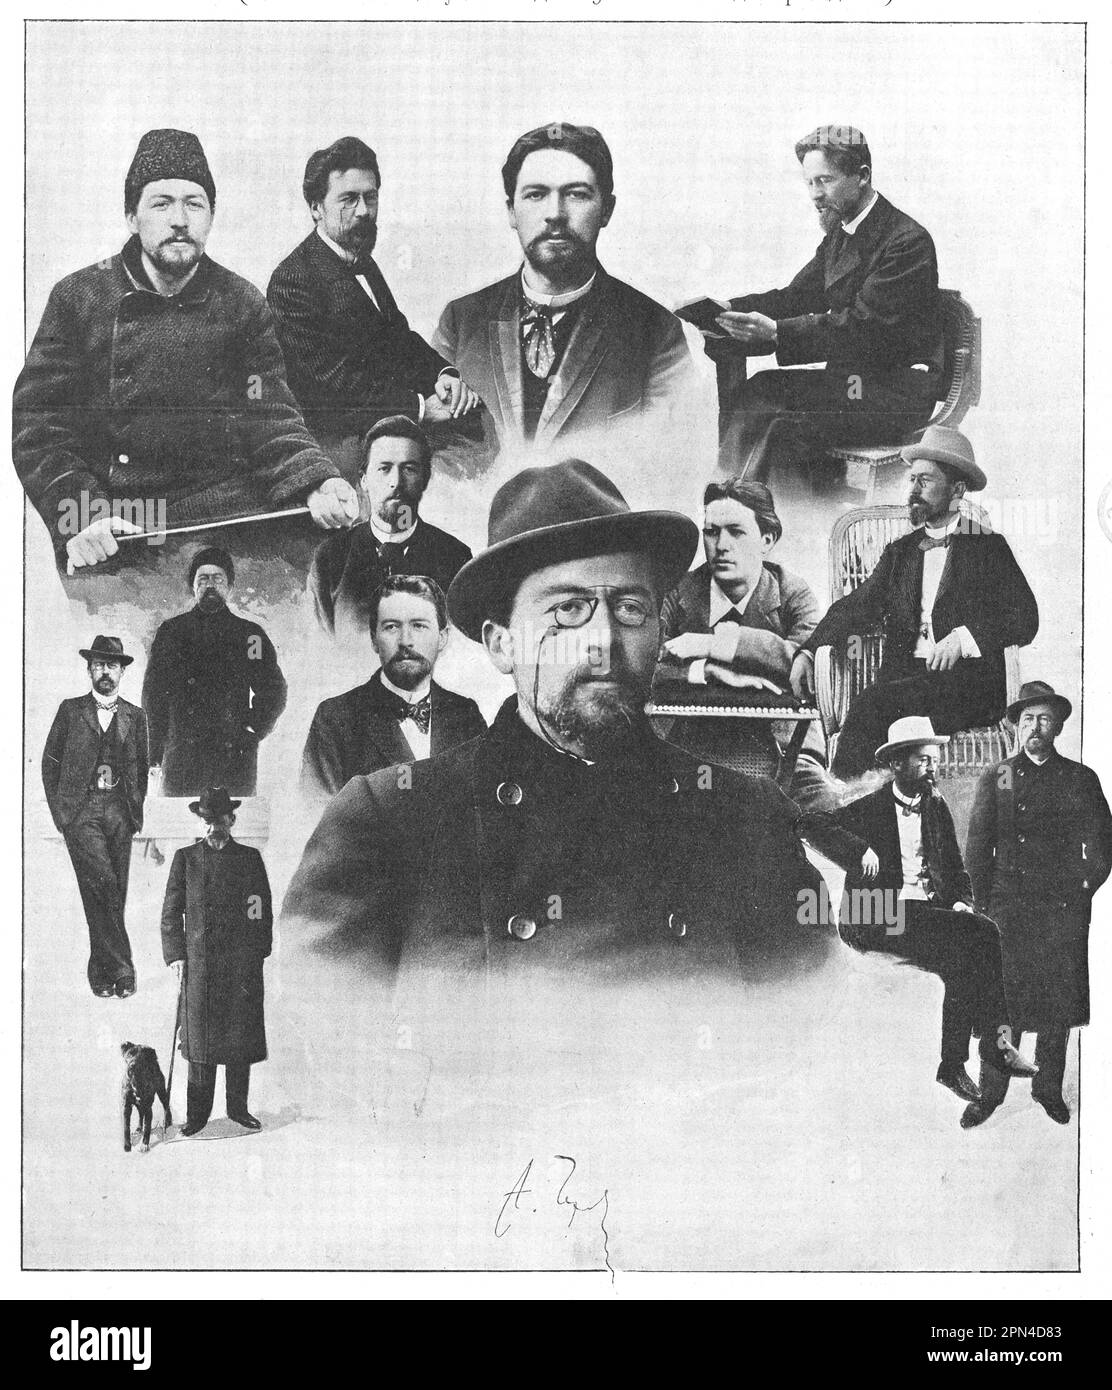 Anton Chekhov in diversi anni della sua vita. Collage fotografico dal 1910. Foto Stock